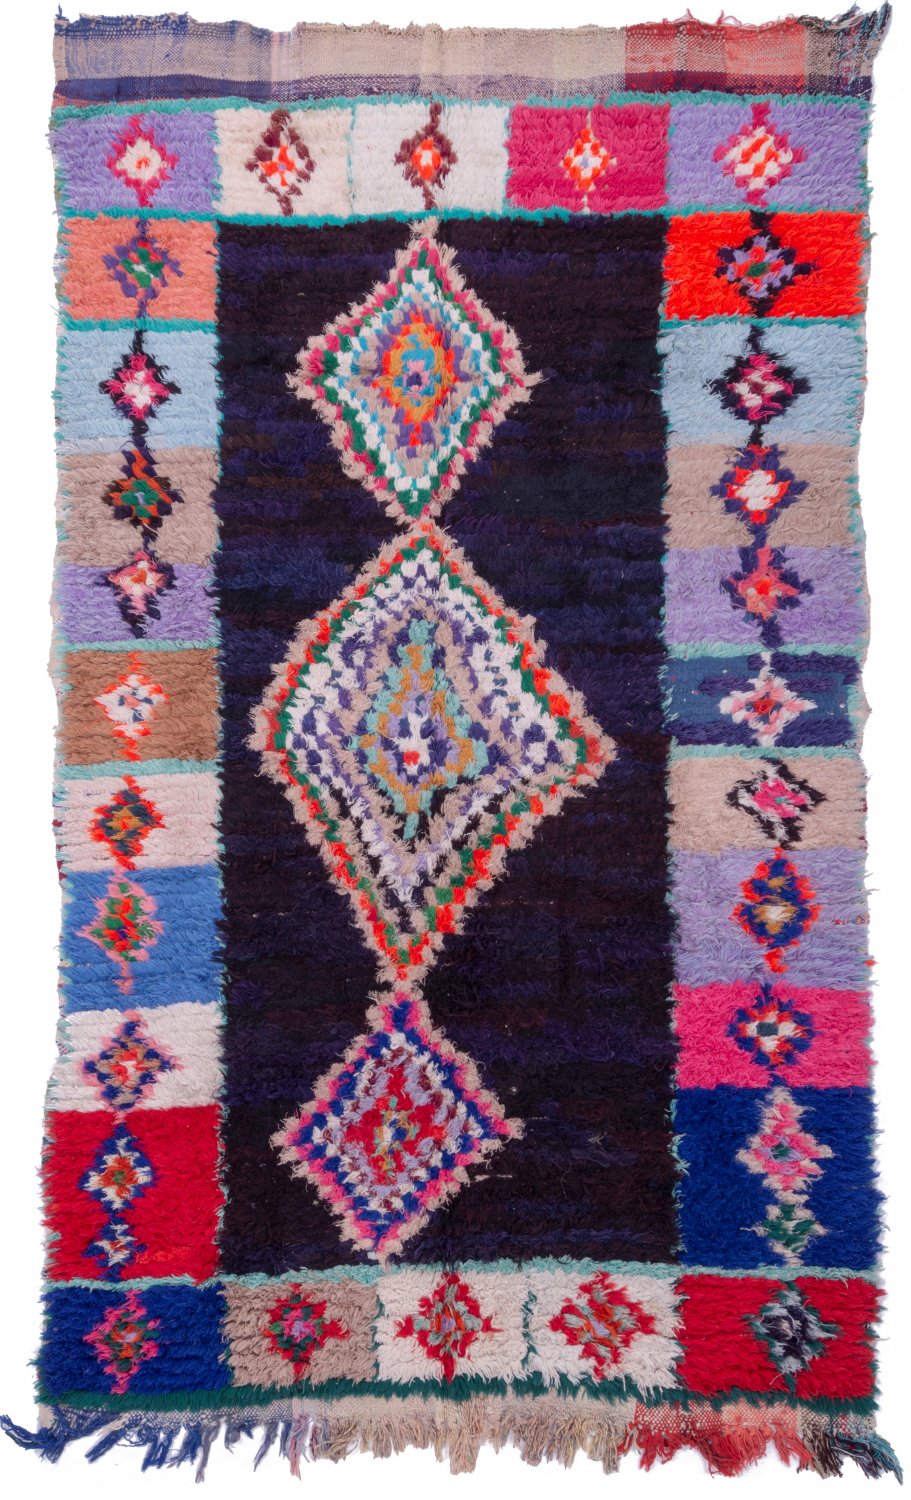 Moroccan Berber rug Boucherouite 250 x 145 cm